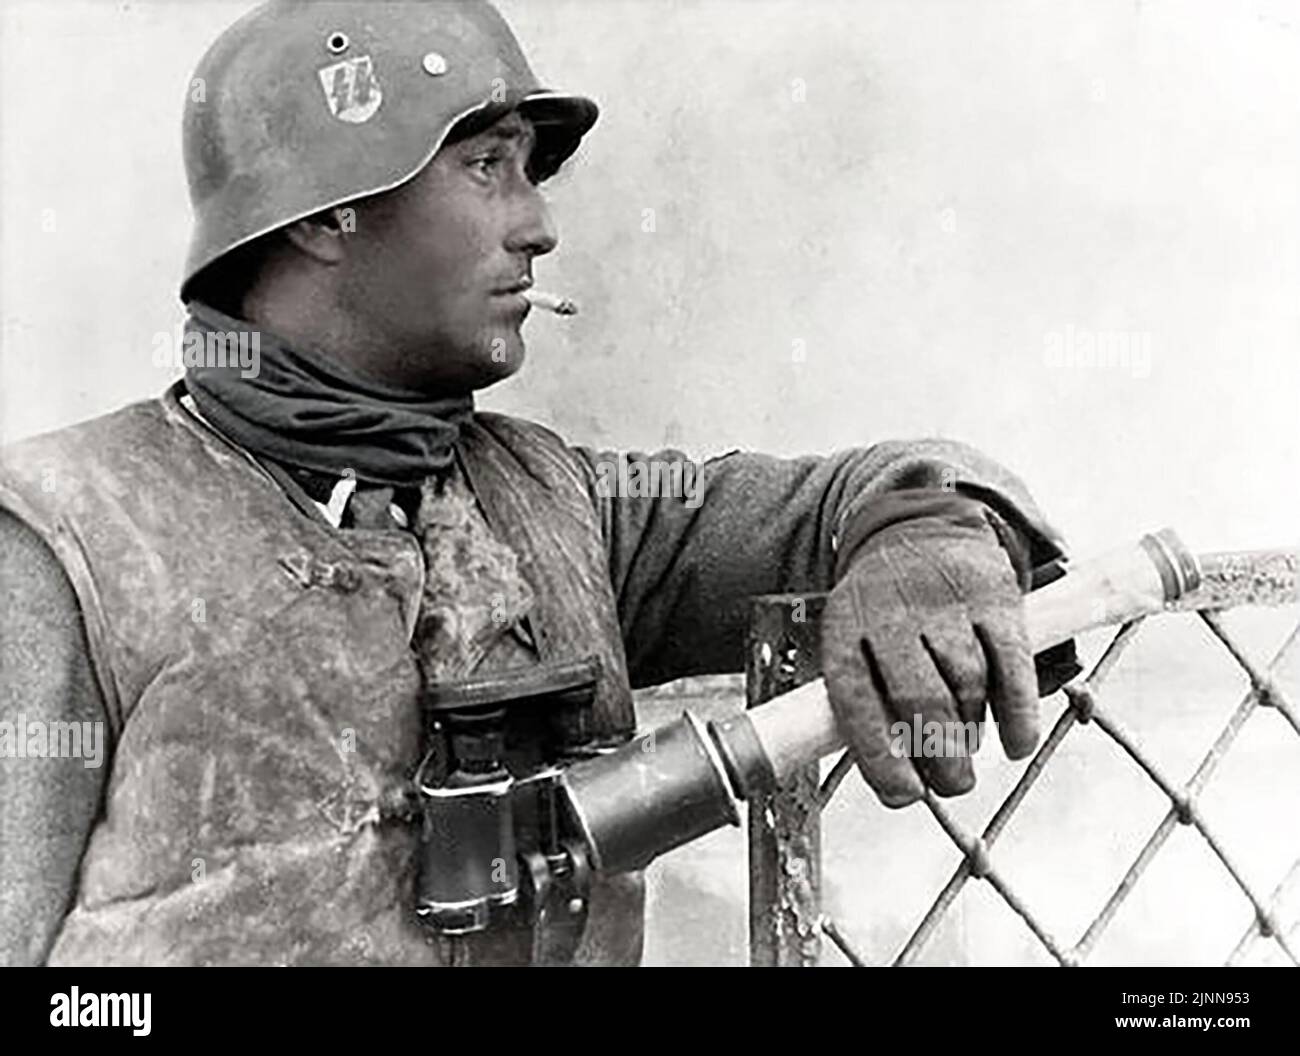 La bataille de Kharkov pendant la deuxième Guerre mondiale 1943. Waffen SS homme identifié comme Unterscharfuehrer Paul Klose avec Grenade photographié en MARS 1943 Banque D'Images